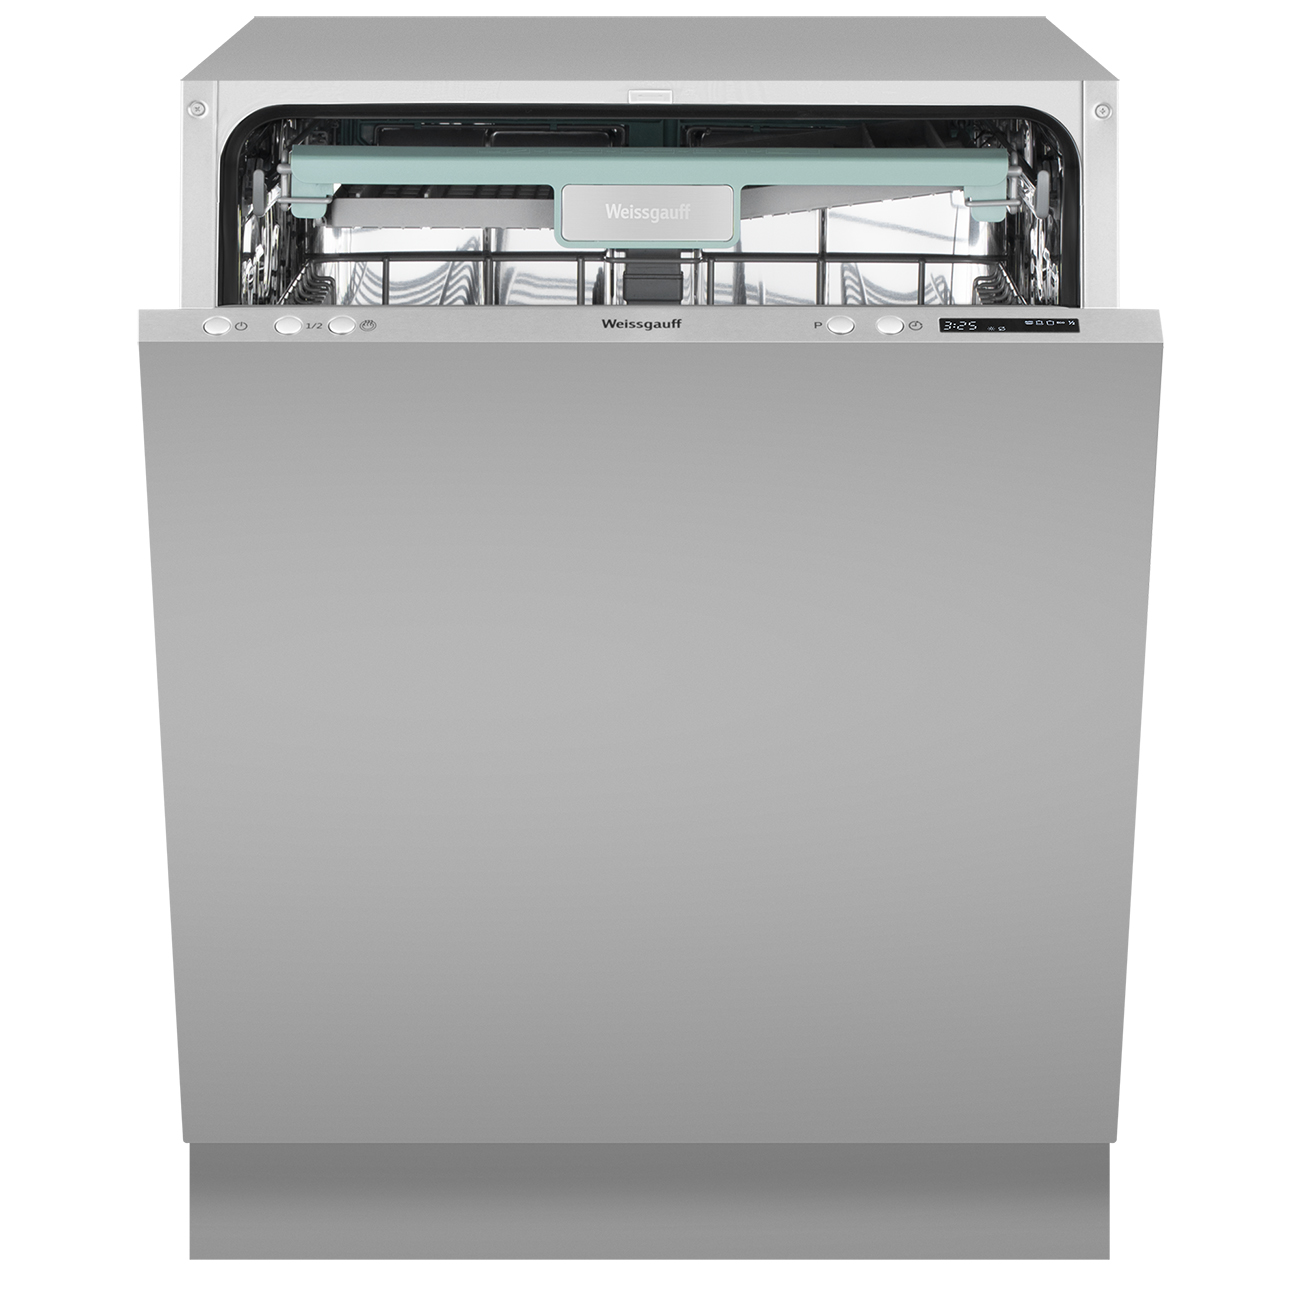 Встраиваемая посудомоечная машина Weissgauff BDW 6043 D посудомоечная машина weissgauff tdw 5057 d